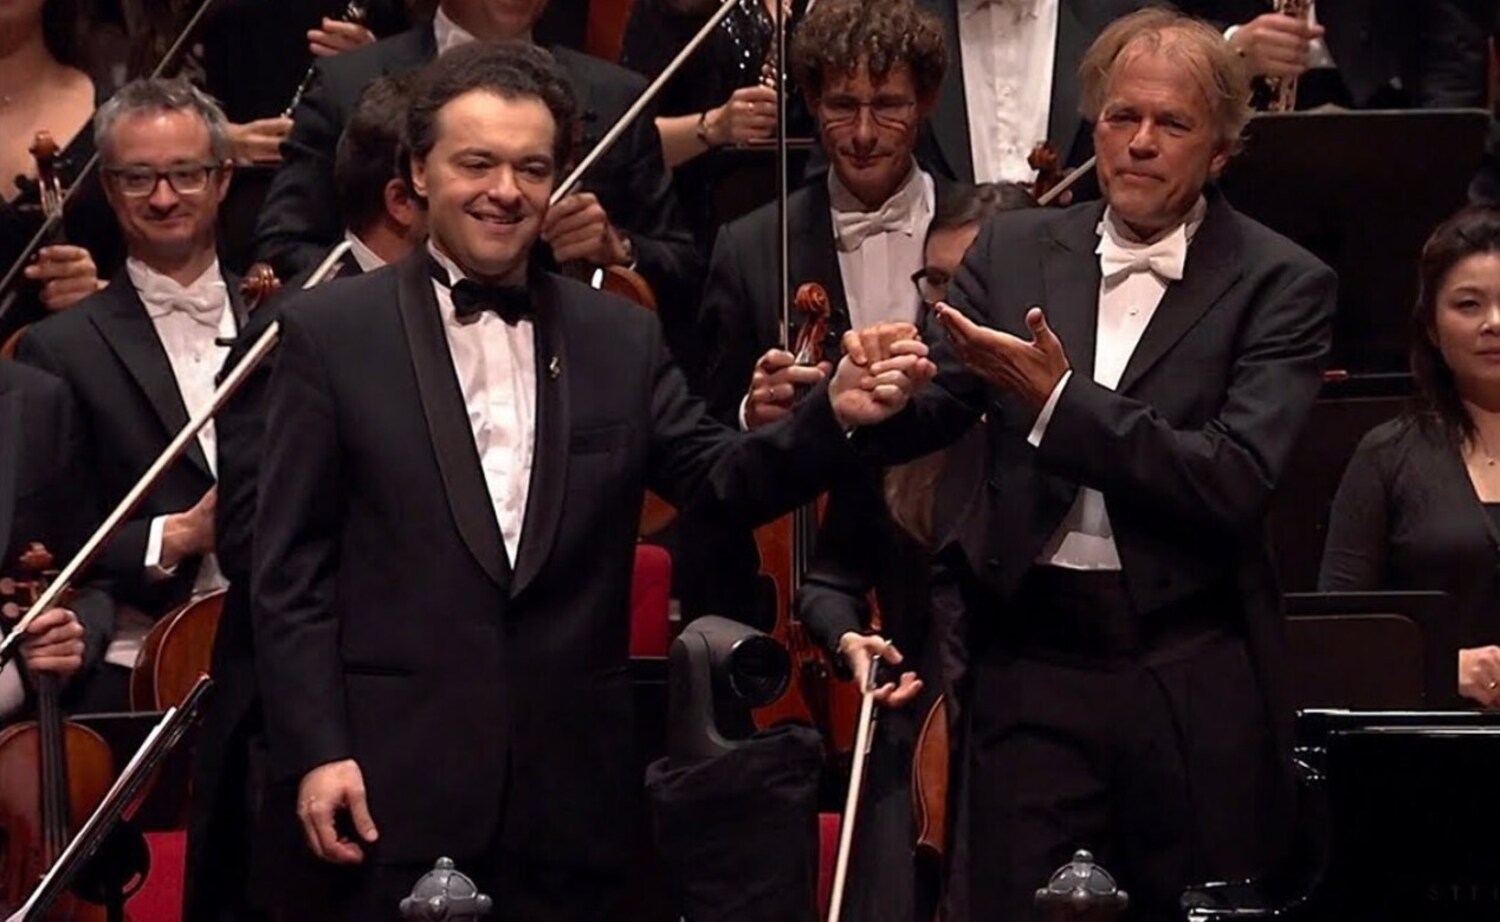 ... Mendelssohn e Verdi - Thomas Hengelbrock dirige la Royal Concertgebouw Orchestra in un concerto dal programma variegato, che lega romanticismo tedesco e italiano (RCO - Opening Night, 2018)
